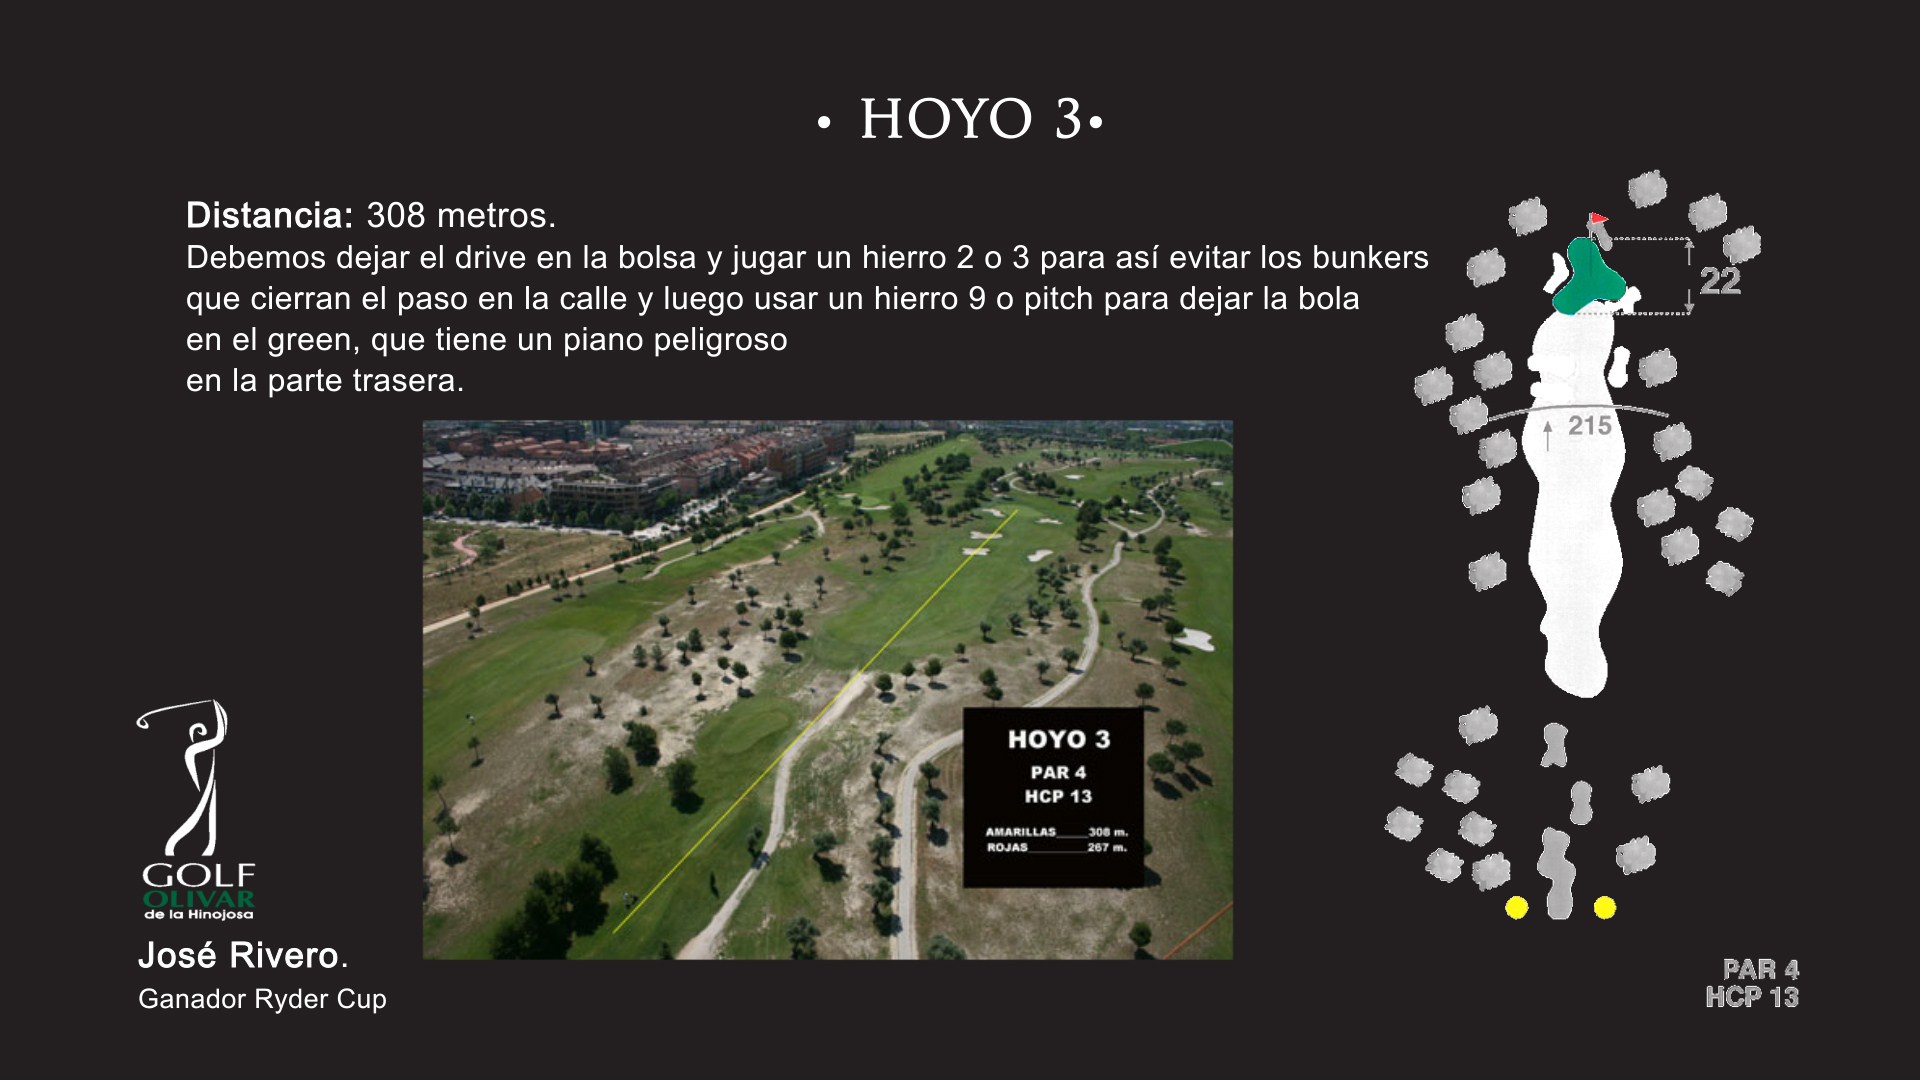 Hoyo 3 Olivar de la Hinojosa